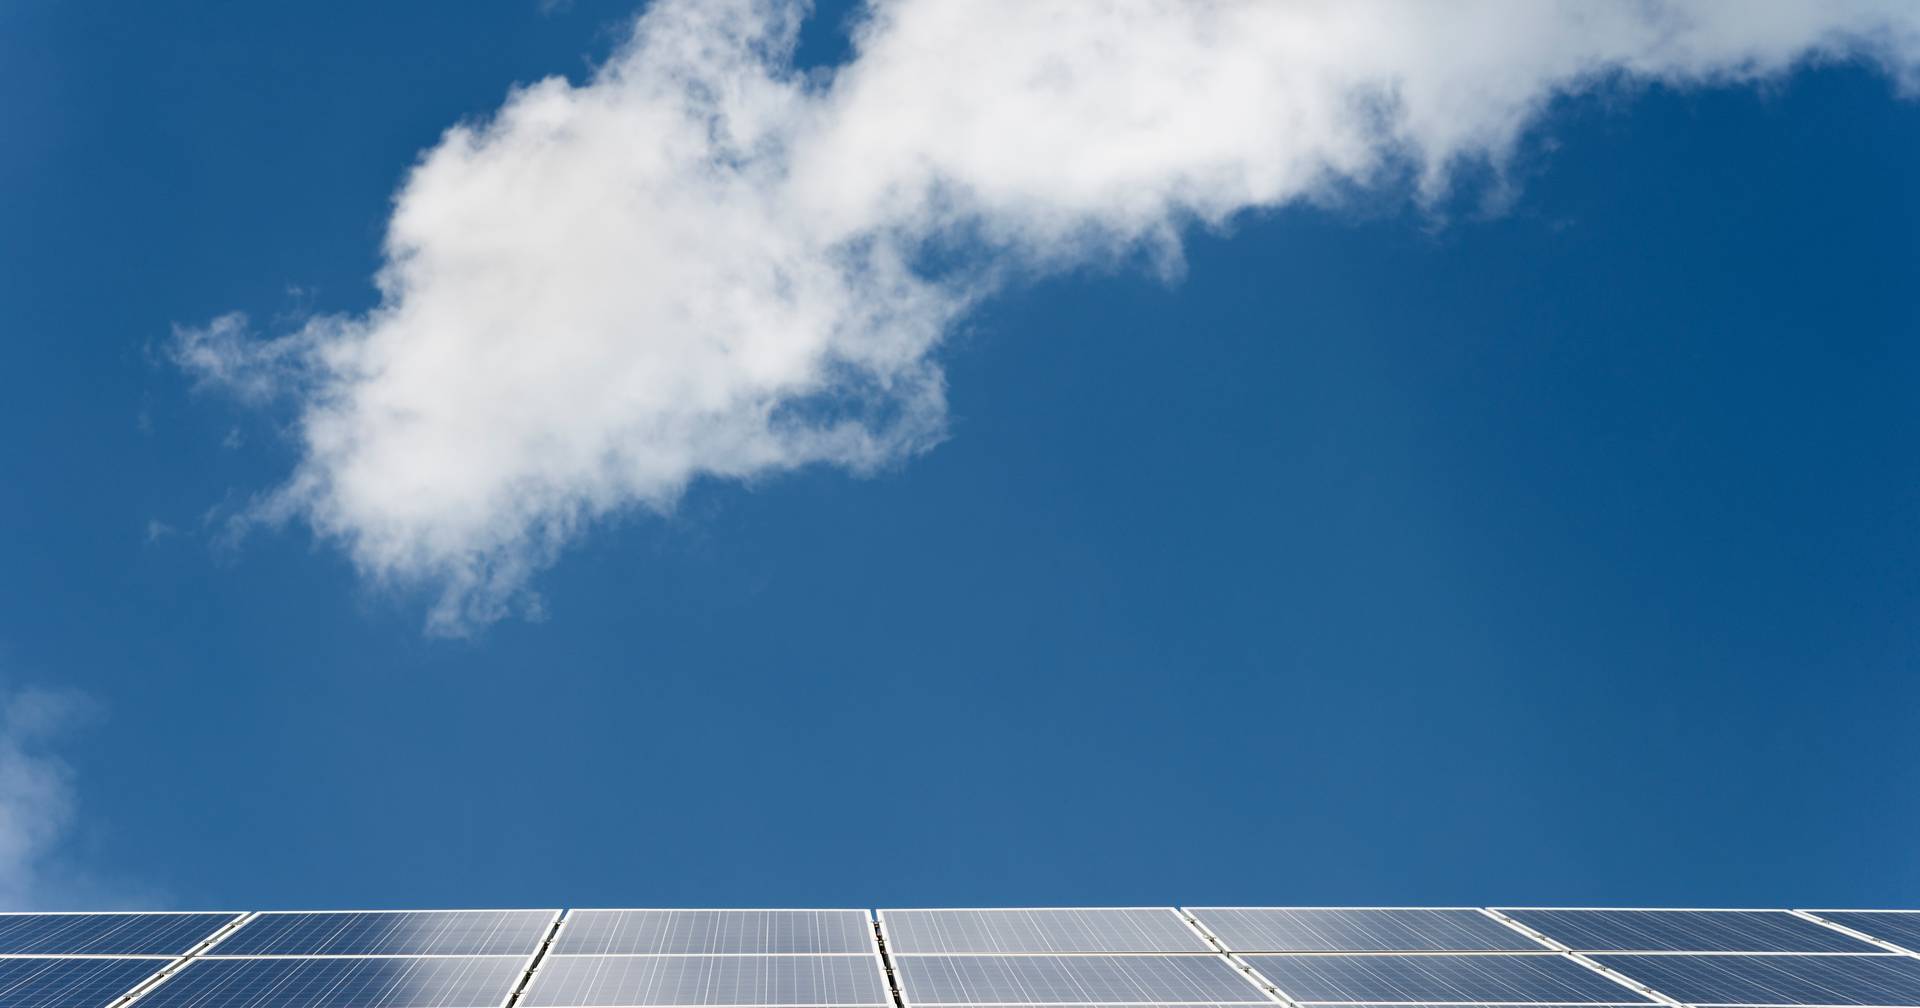 Das deutsche Unternehmen RWE nimmt das erste Solarkraftwerk in Portugal in Betrieb